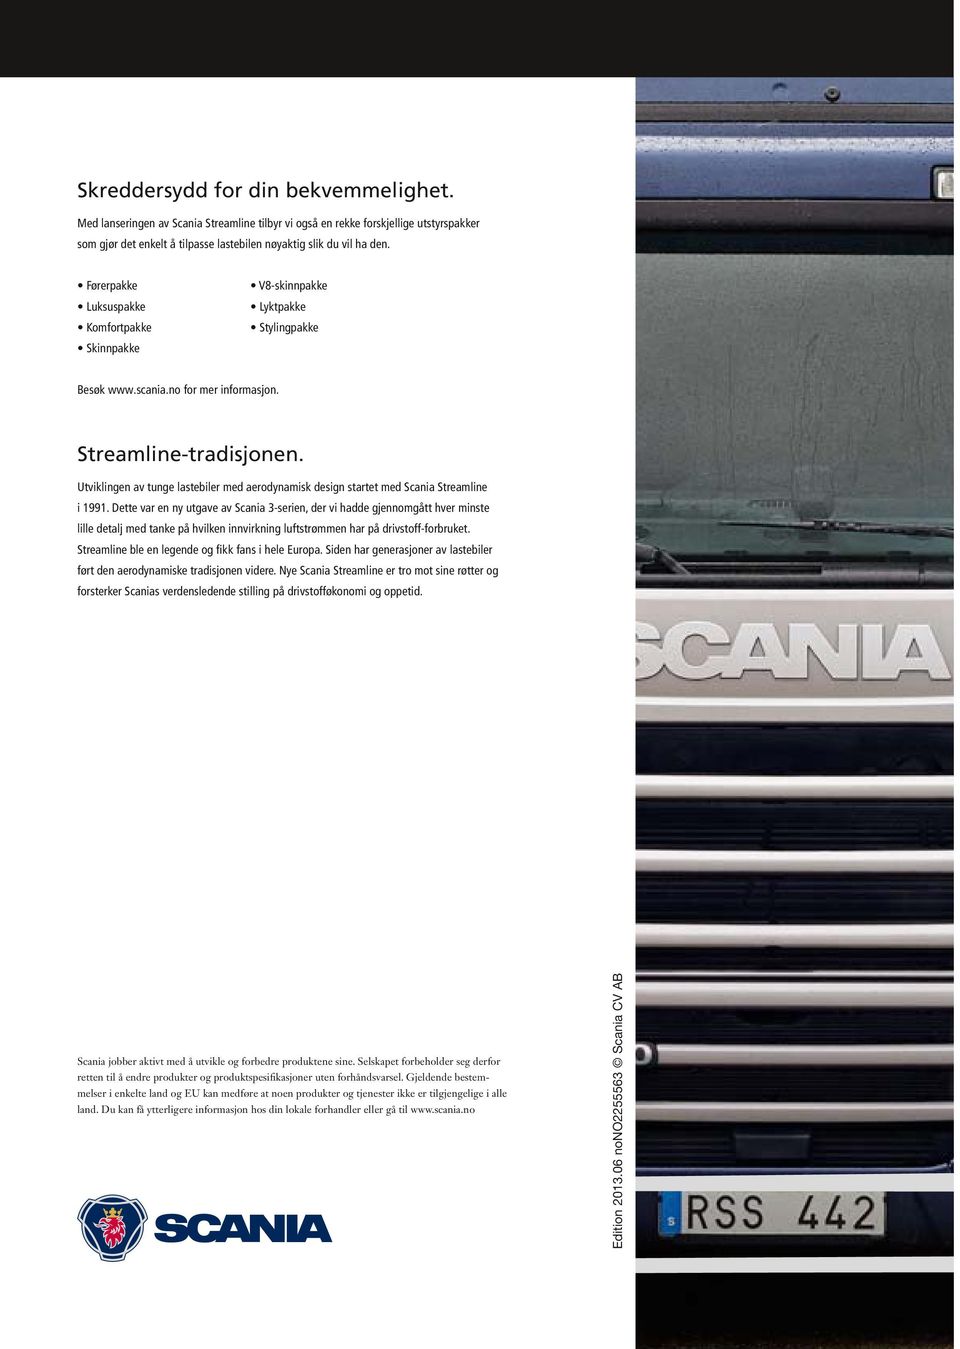 Utviklingen av tunge lastebiler med aerodynamisk design startet med Scania Streamline i 1991.